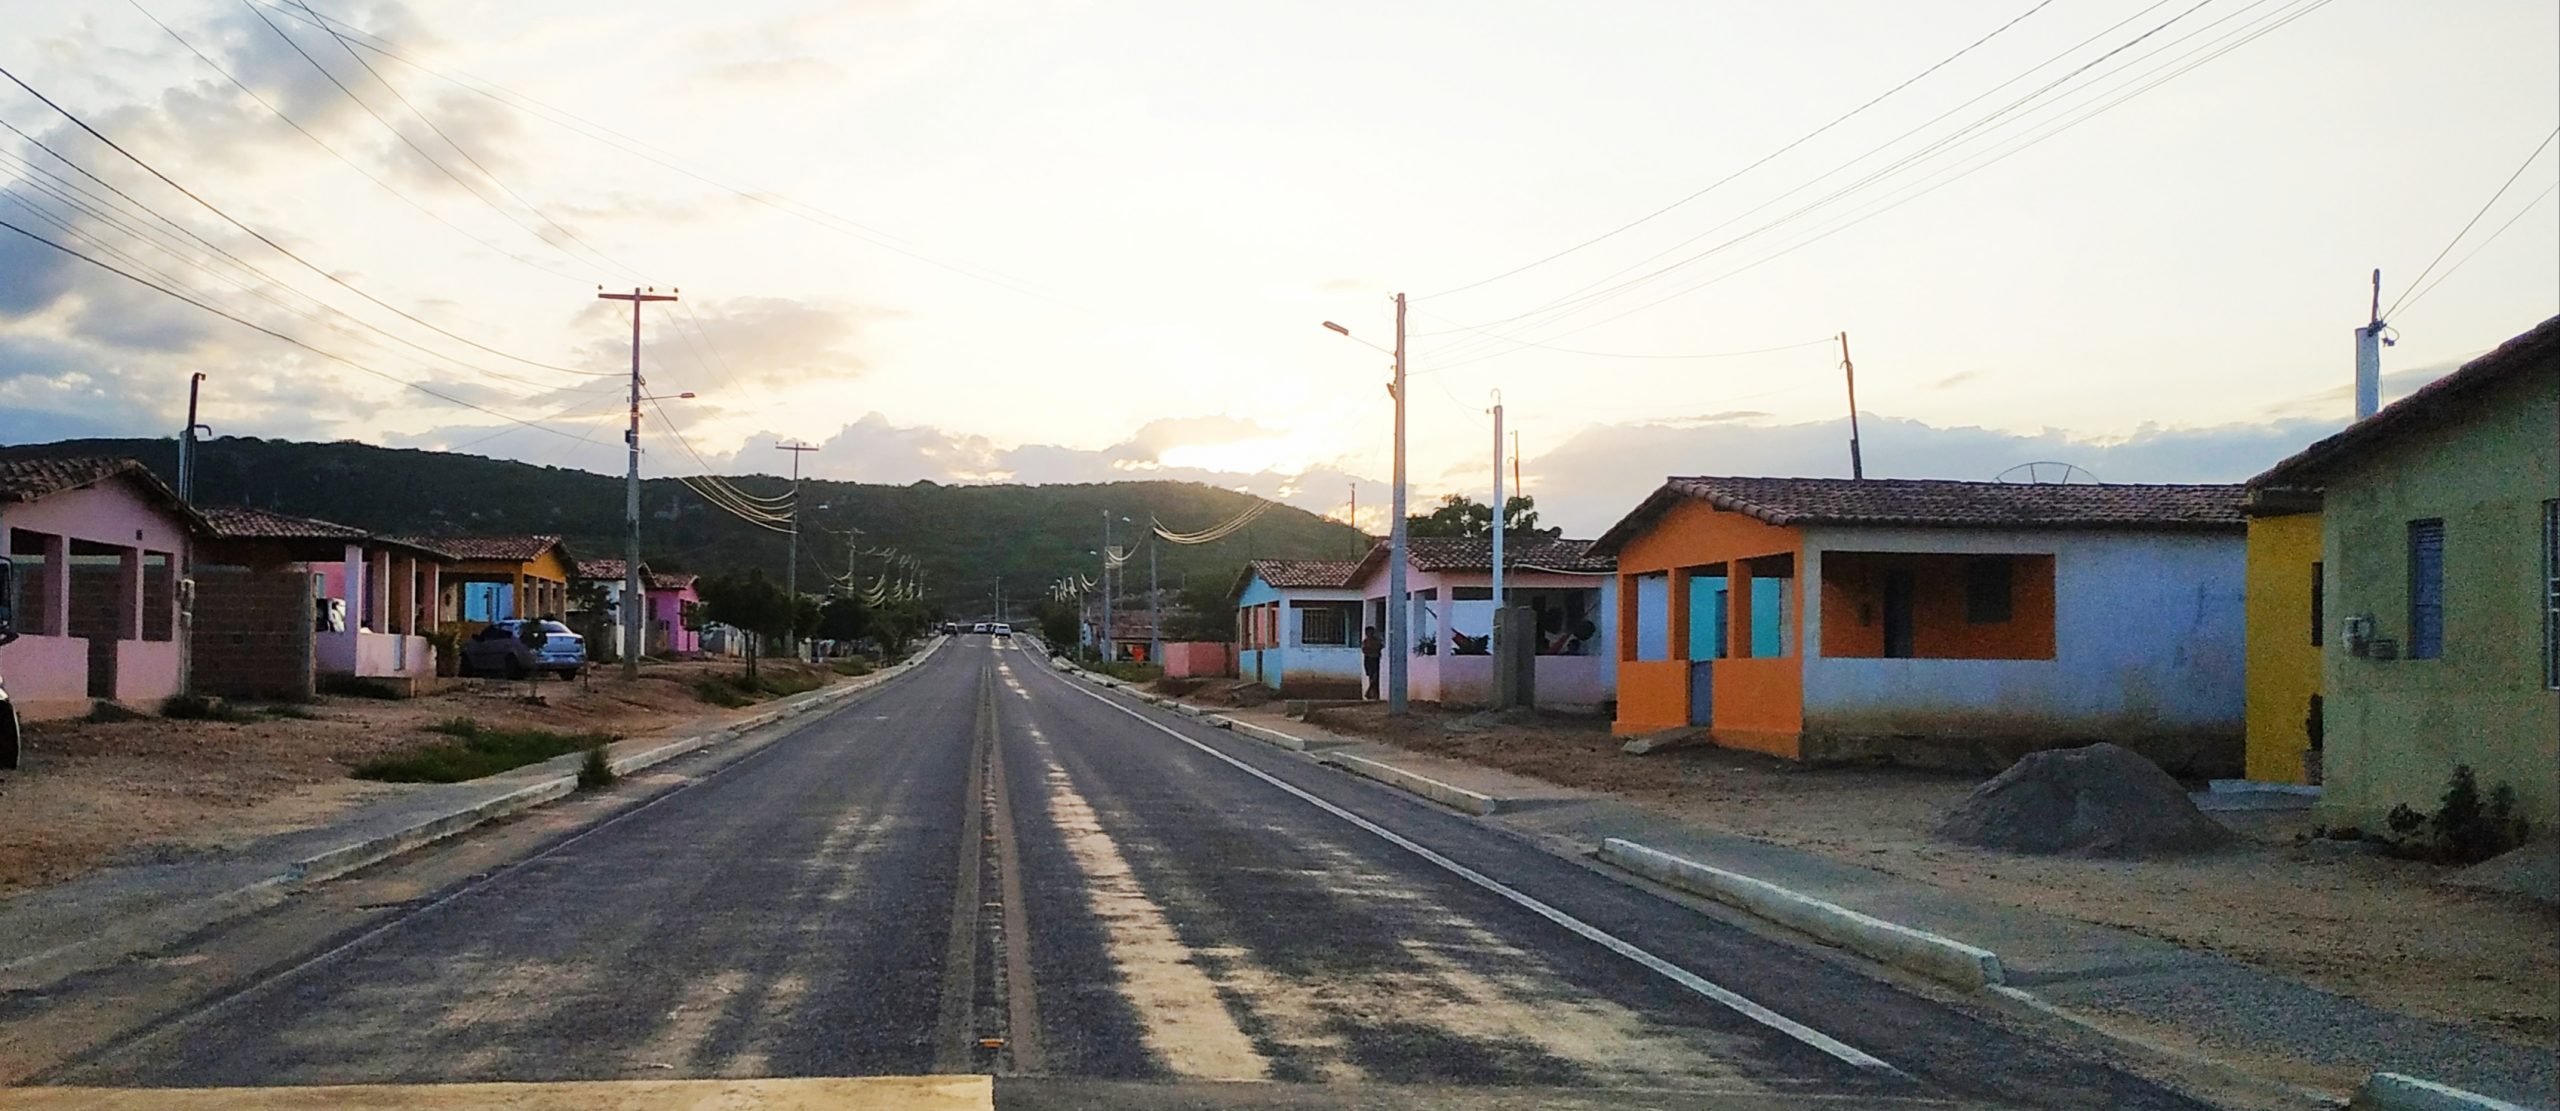 Cerro Corá: Moradores do Assentamento Santa Clara II, vila B reclamam da falta no abastecimento d’água